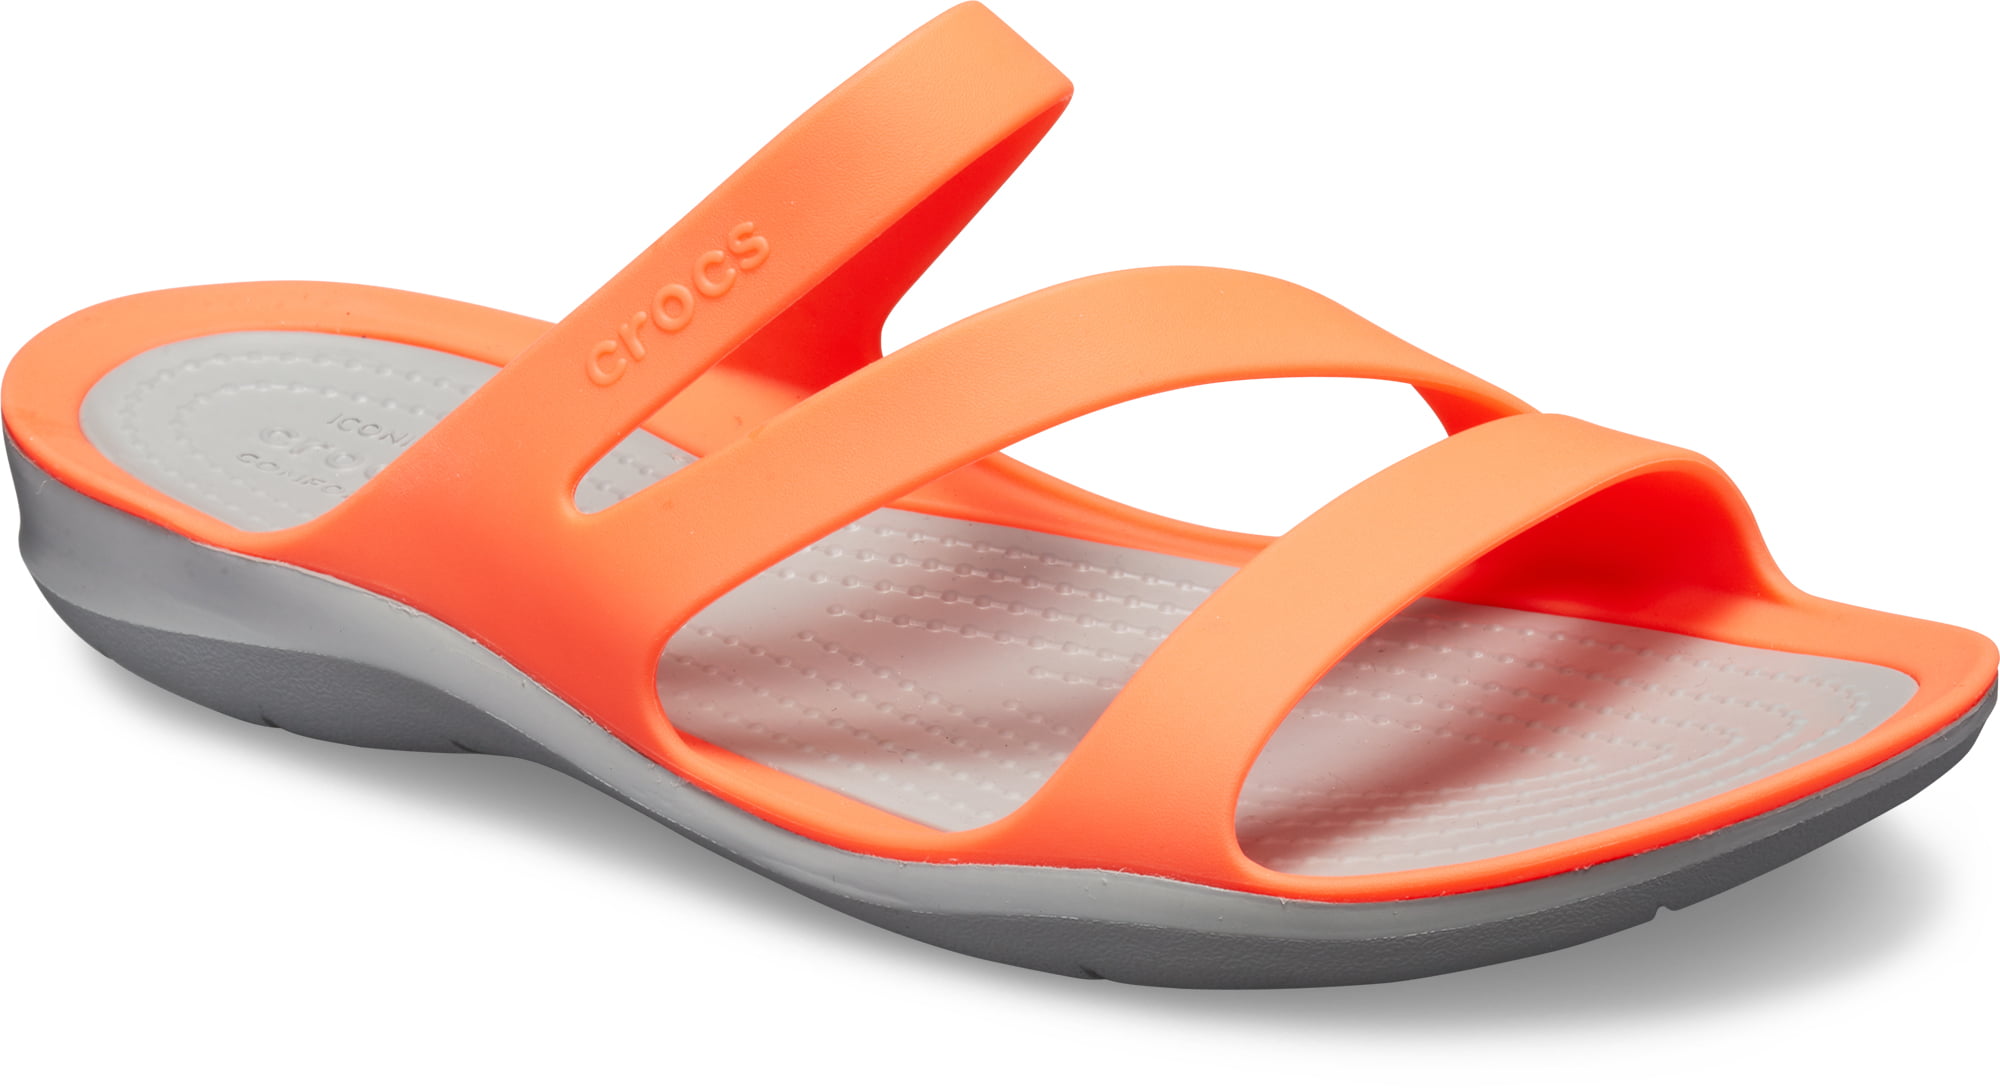 orange croc flip flops